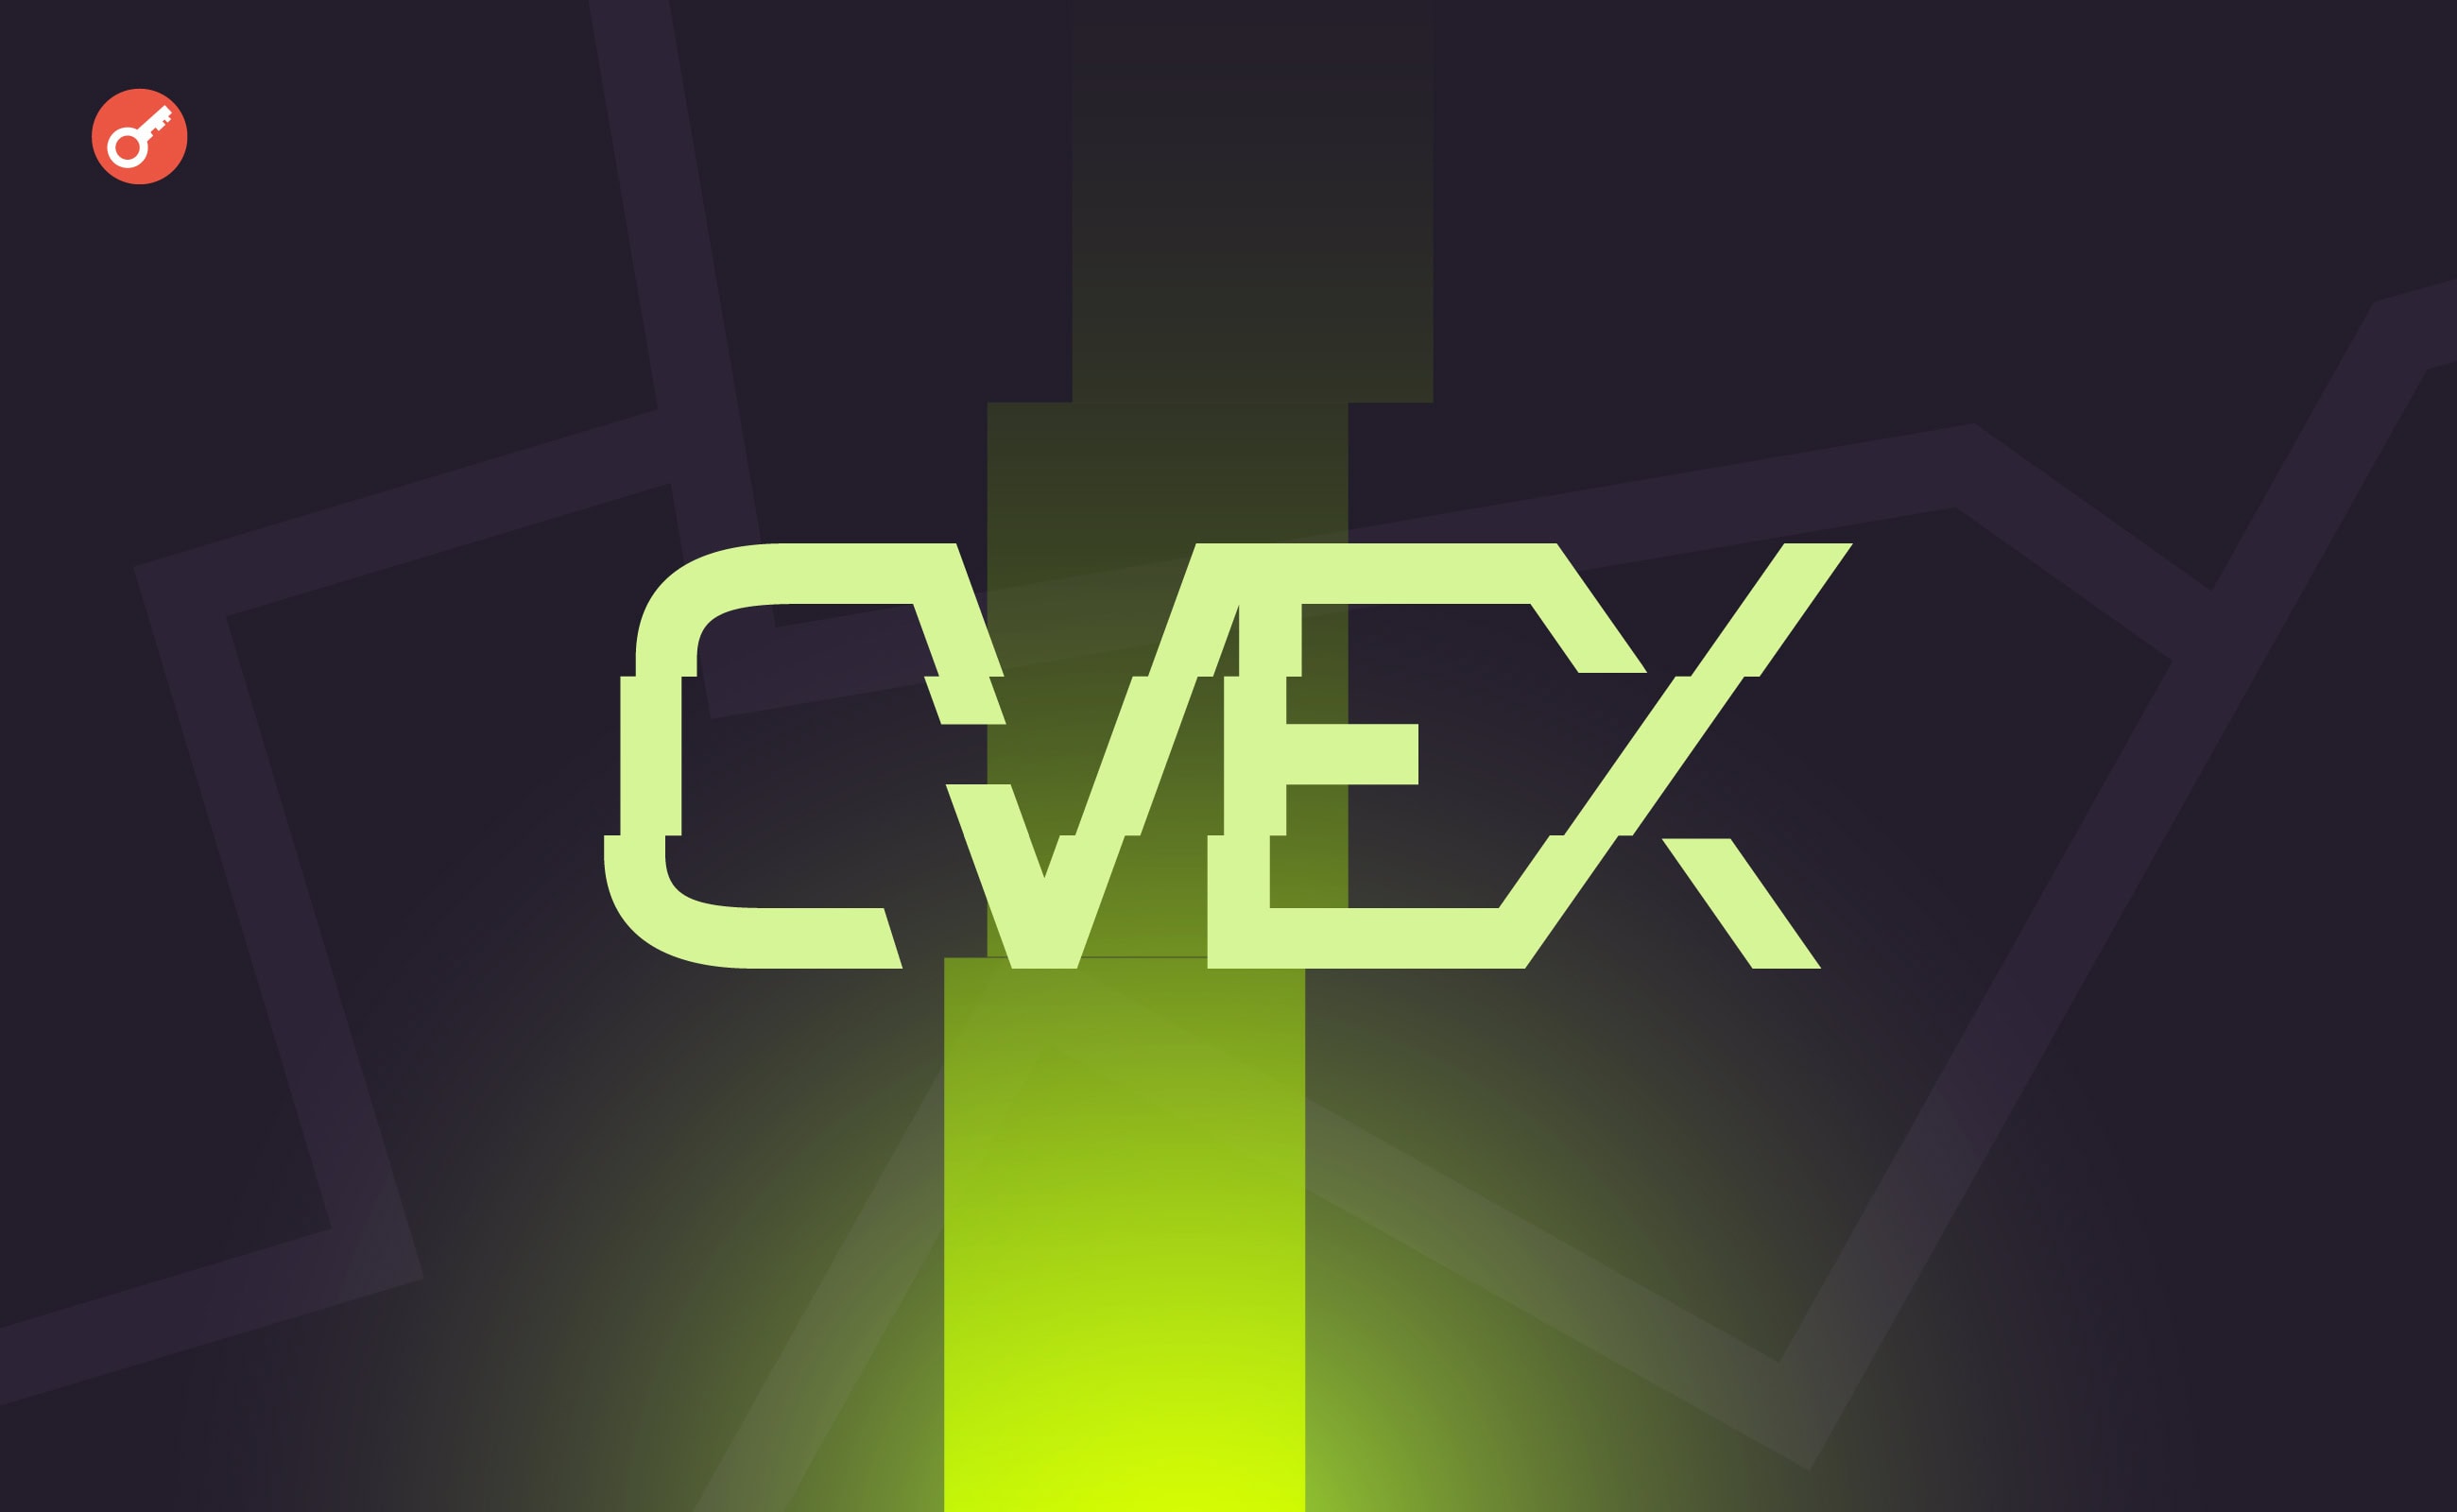 Децентралізована біржа CVEX отримала $7 млн в рамках двох раундів фінансування. Головний колаж новини.